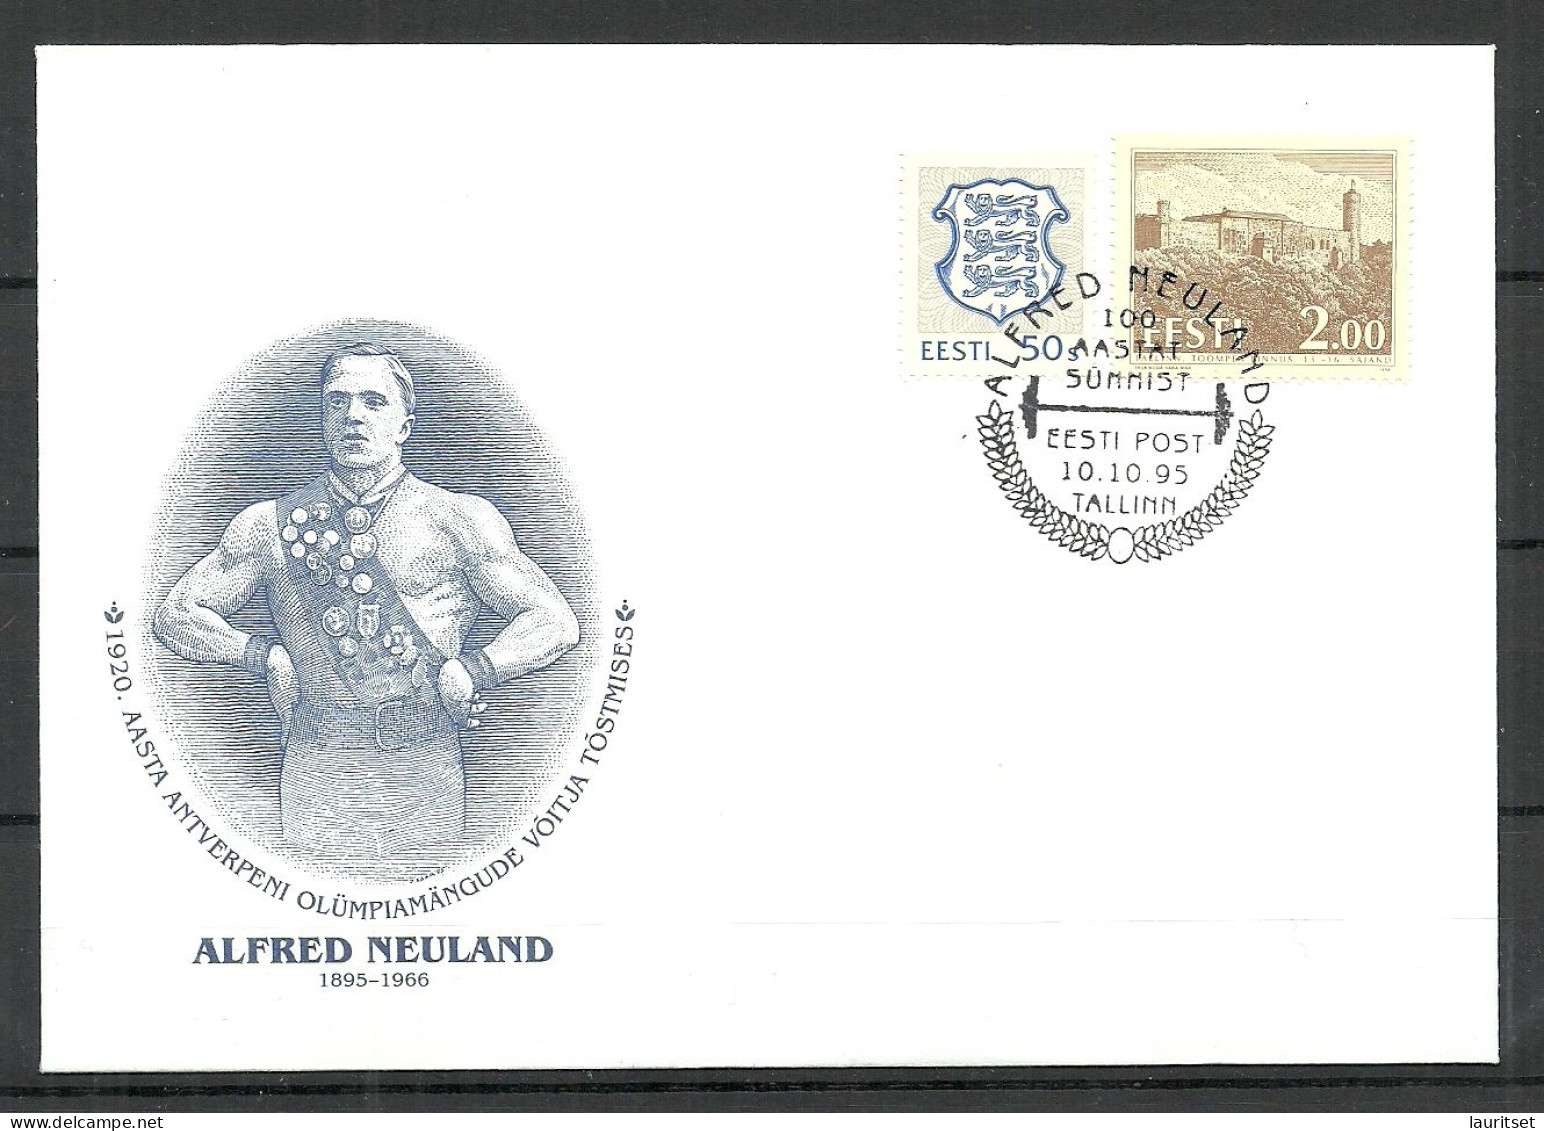 Estland Estonie Estonia 1996 Alfred Neuland Antwerpen Olympic Games Gewichtheben Goldmedal Special Cancel Sonderstempel - Verano 1920: Amberes (Anvers)